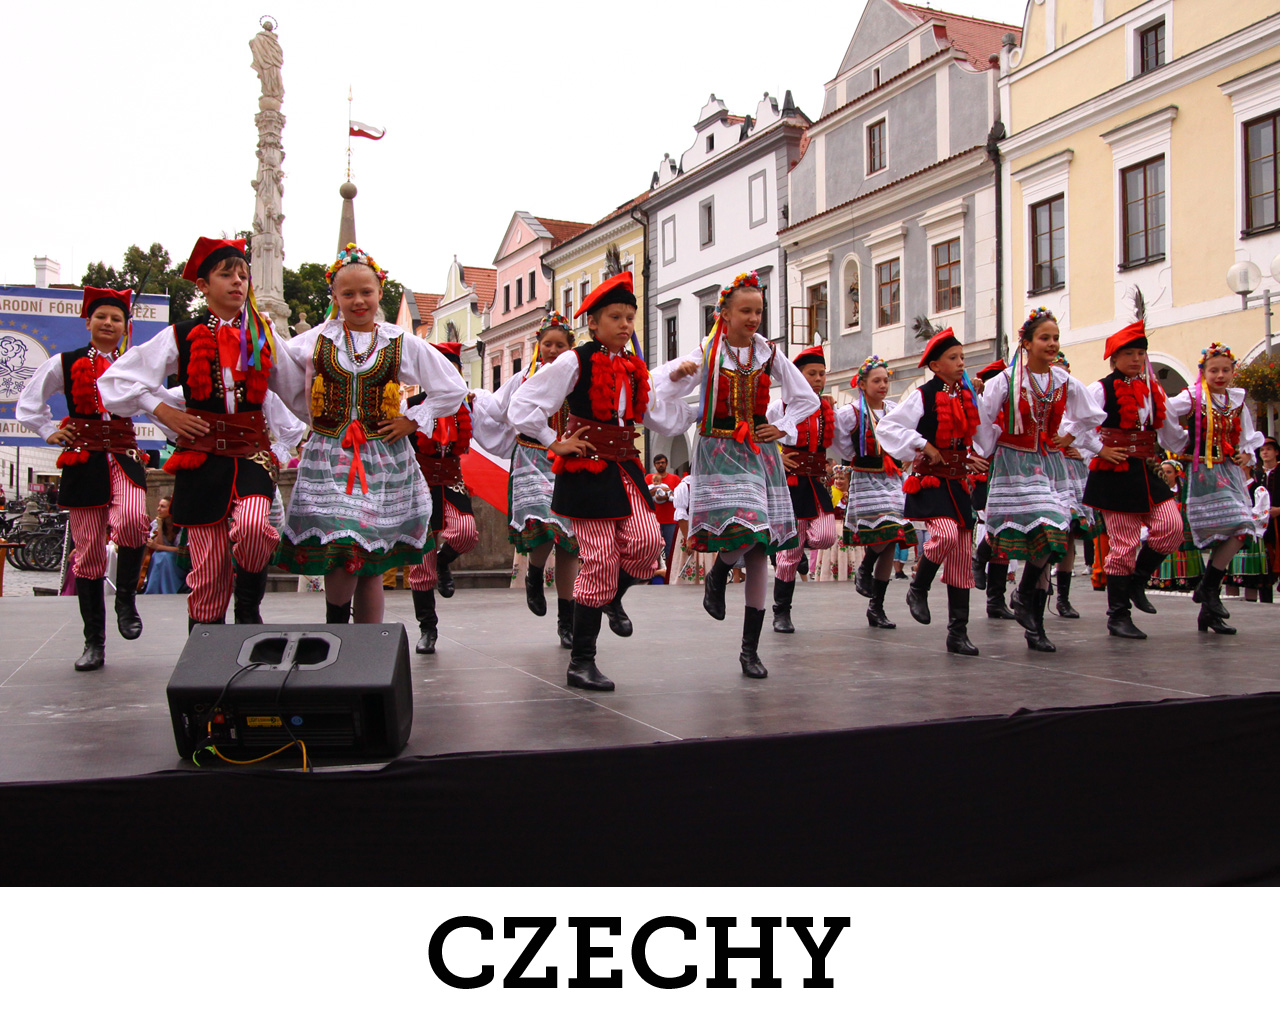 Czechy, 2012 r.